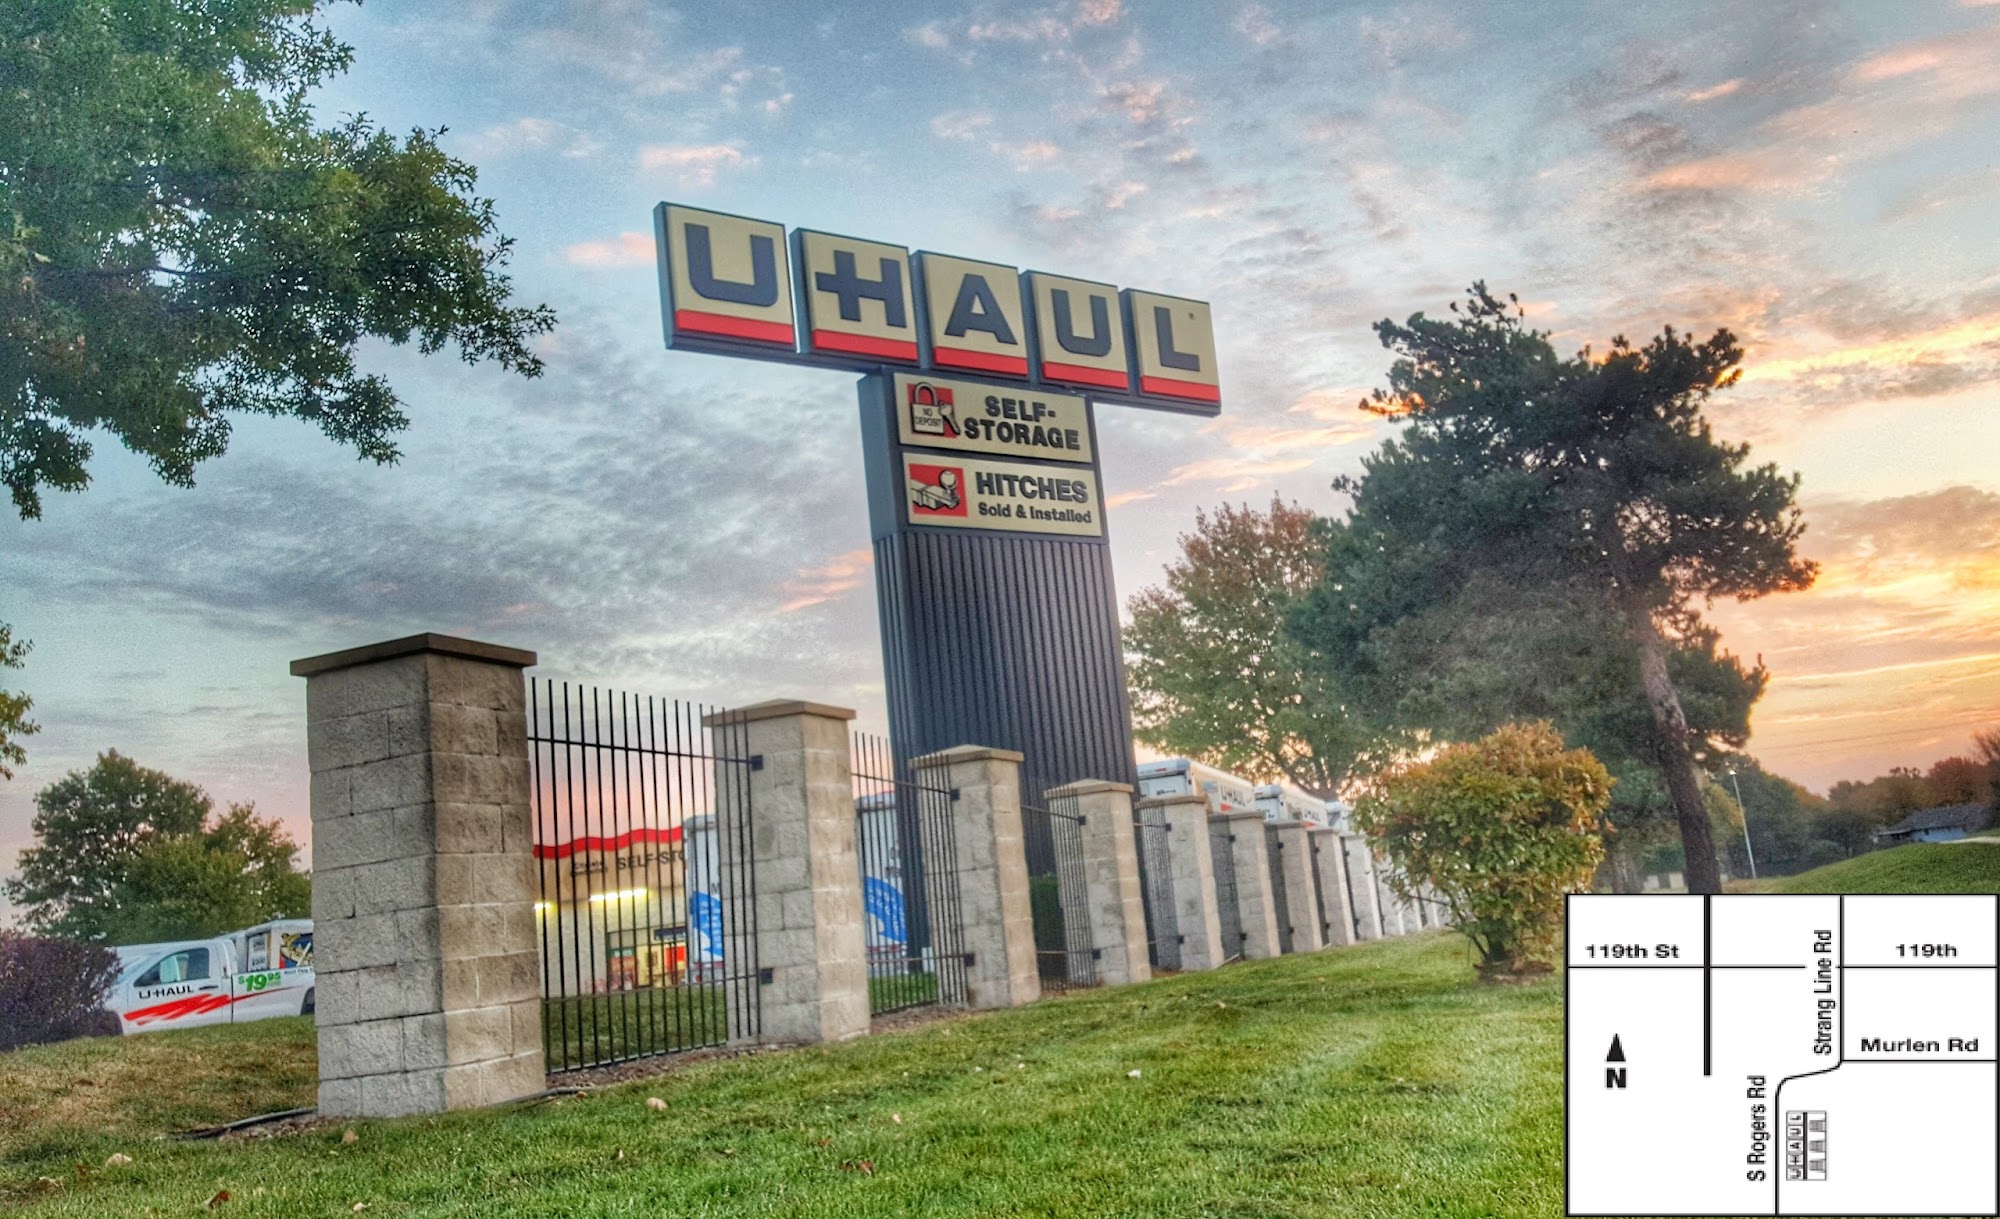 U-Haul Moving & Storage of Olathe